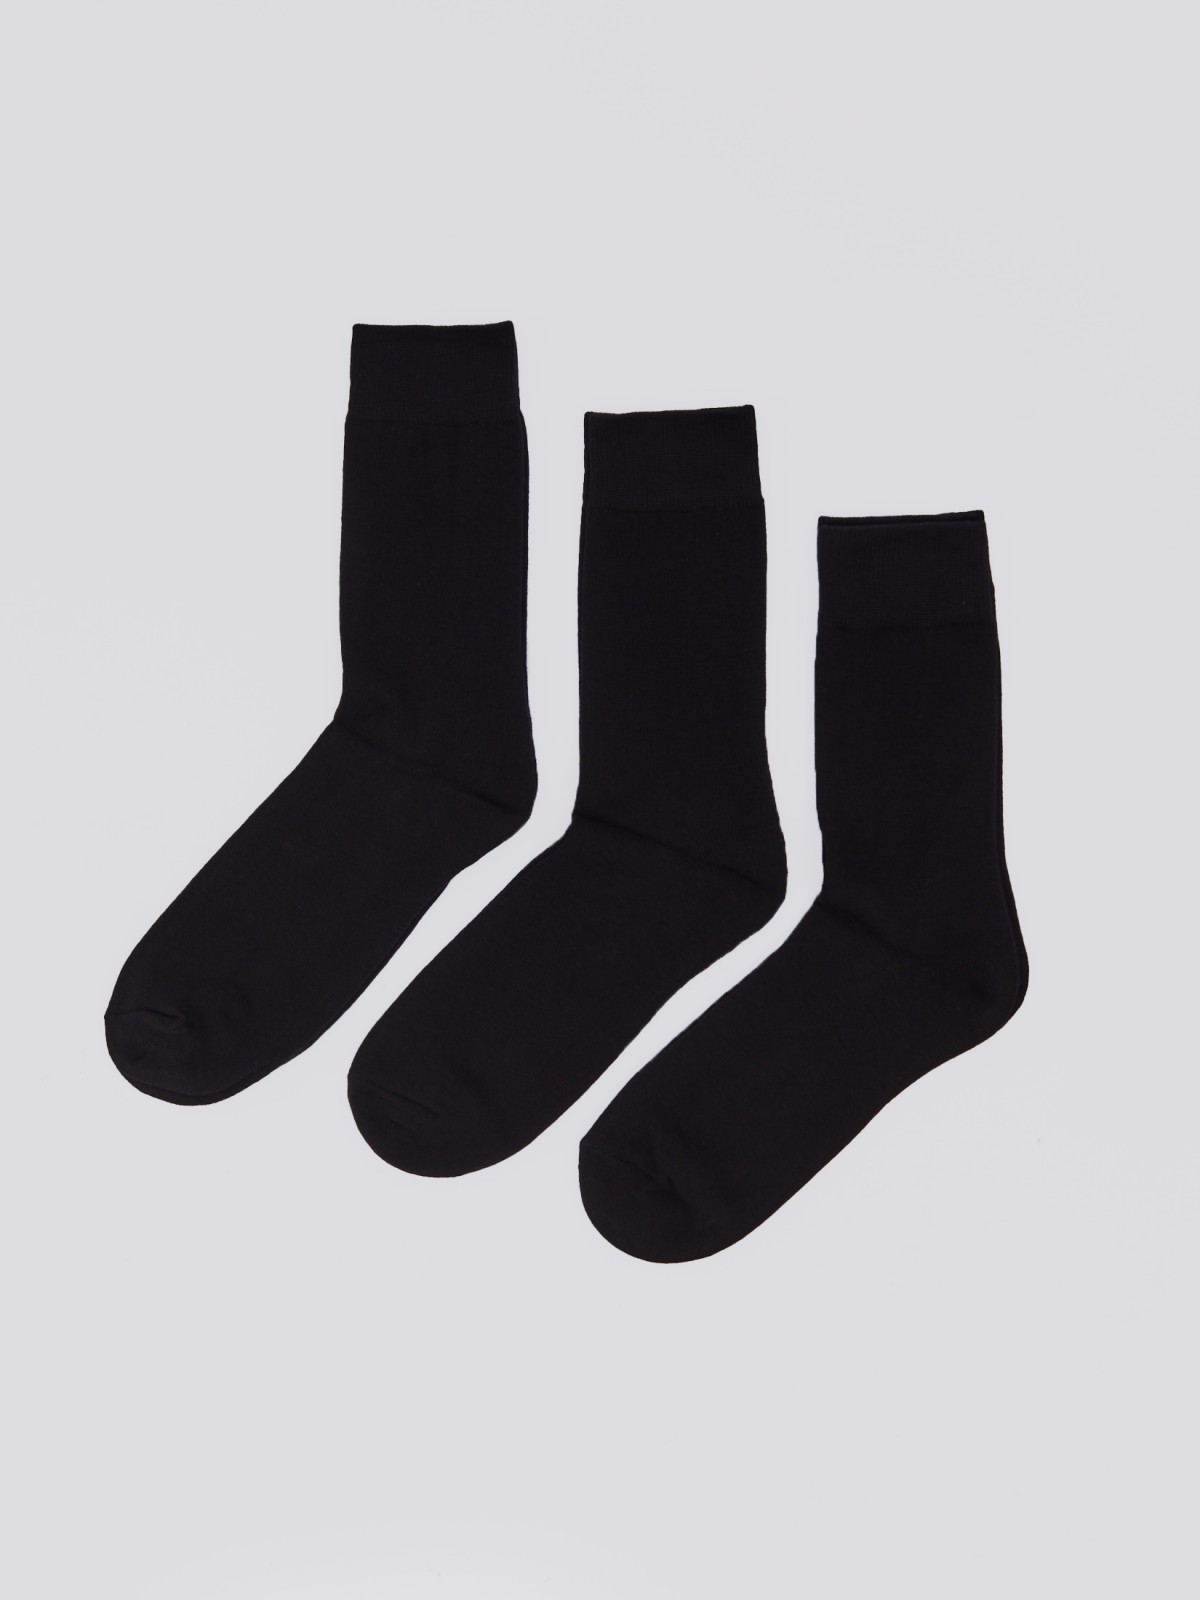 Набор носков (3 пары в комплекте) zolla 01411998J015, цвет черный, размер 25-27